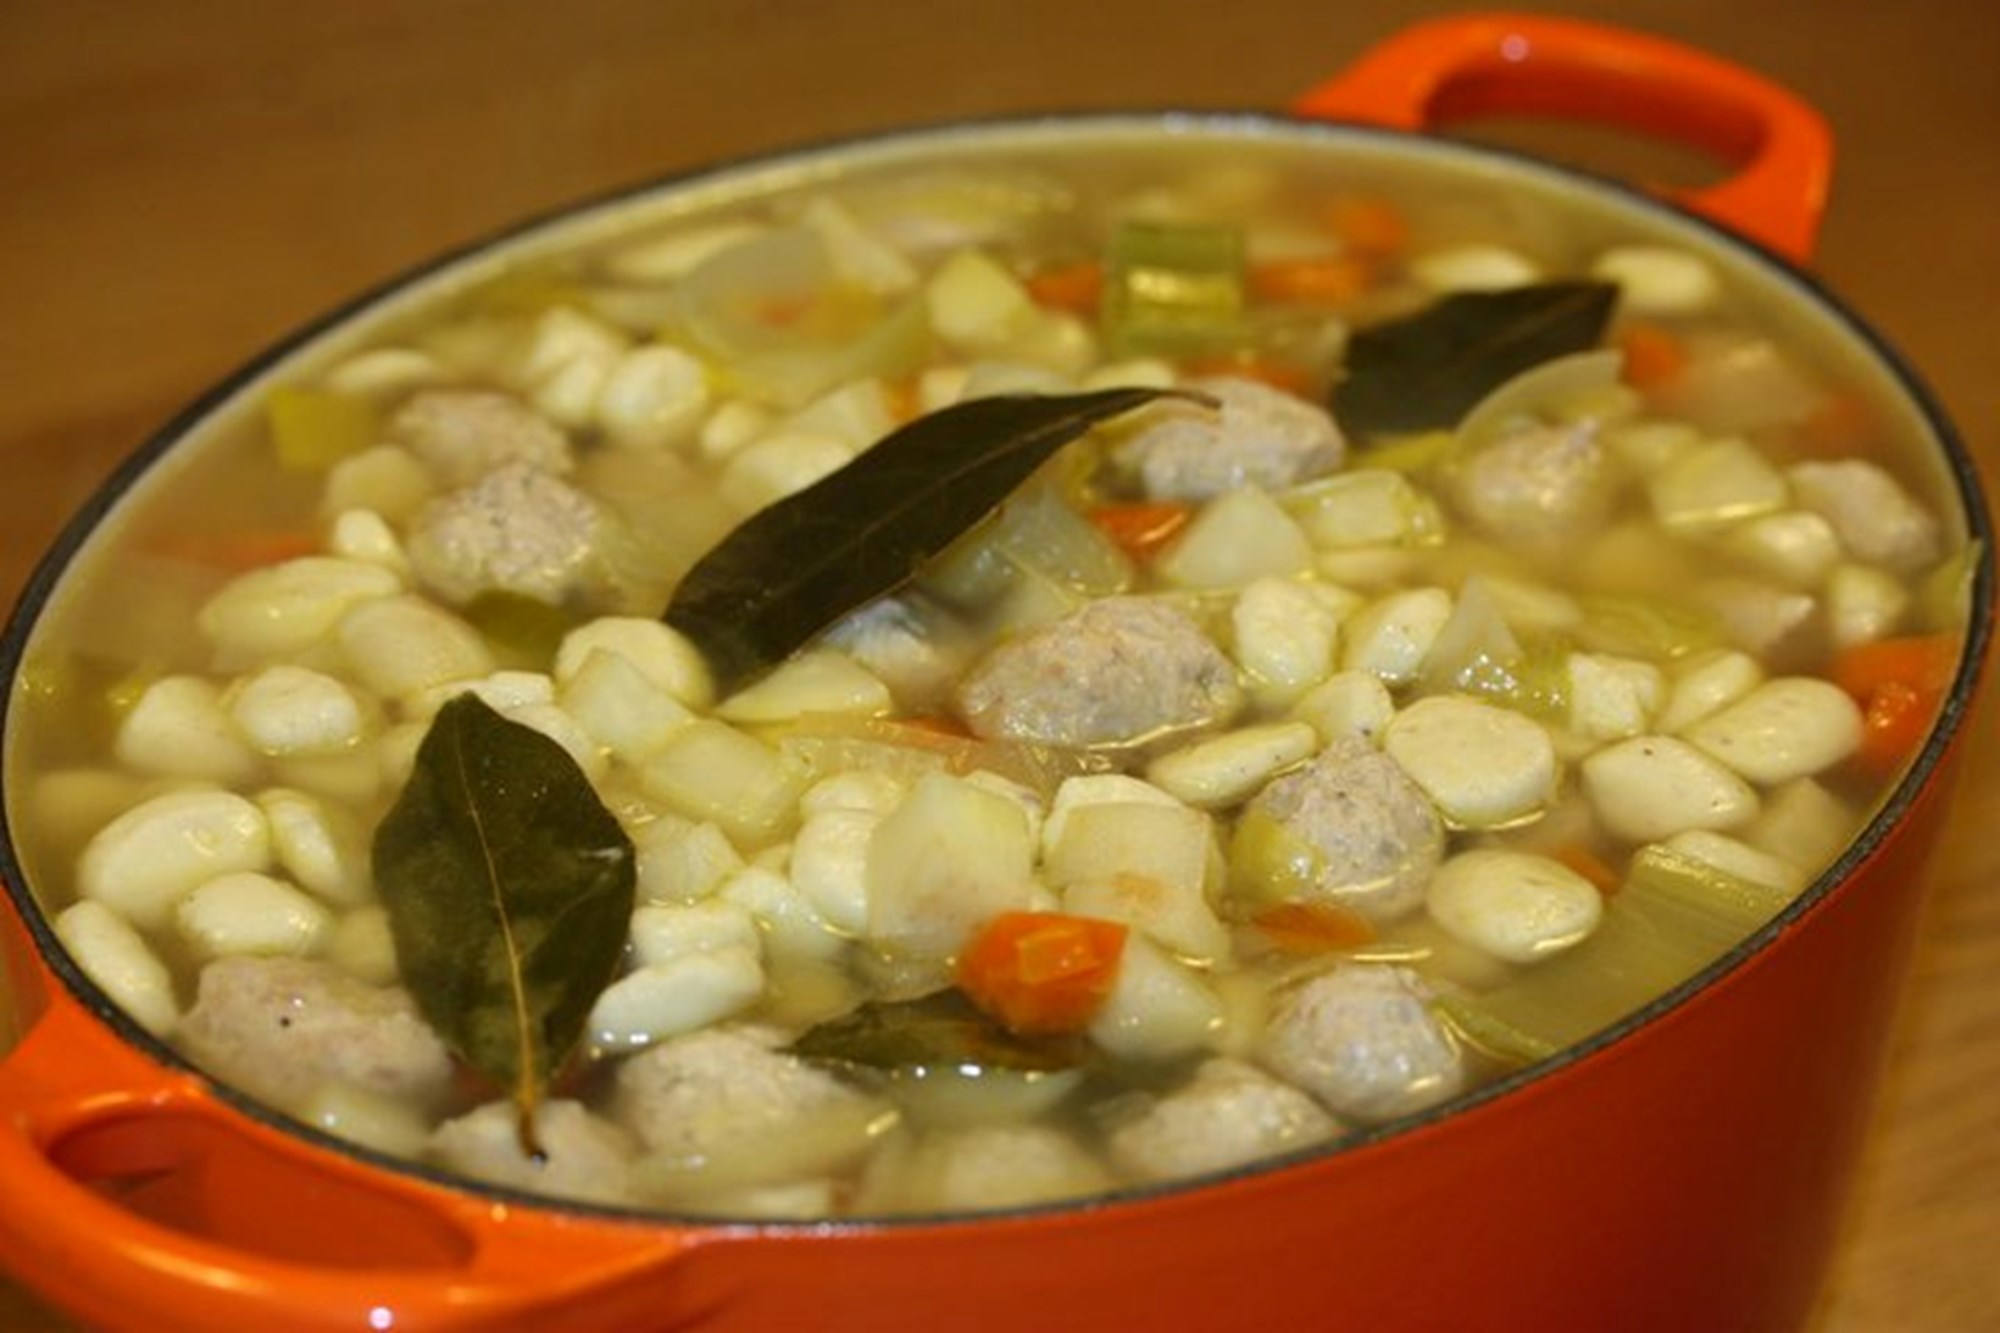 Kødboller & melboller til klar suppe med boller